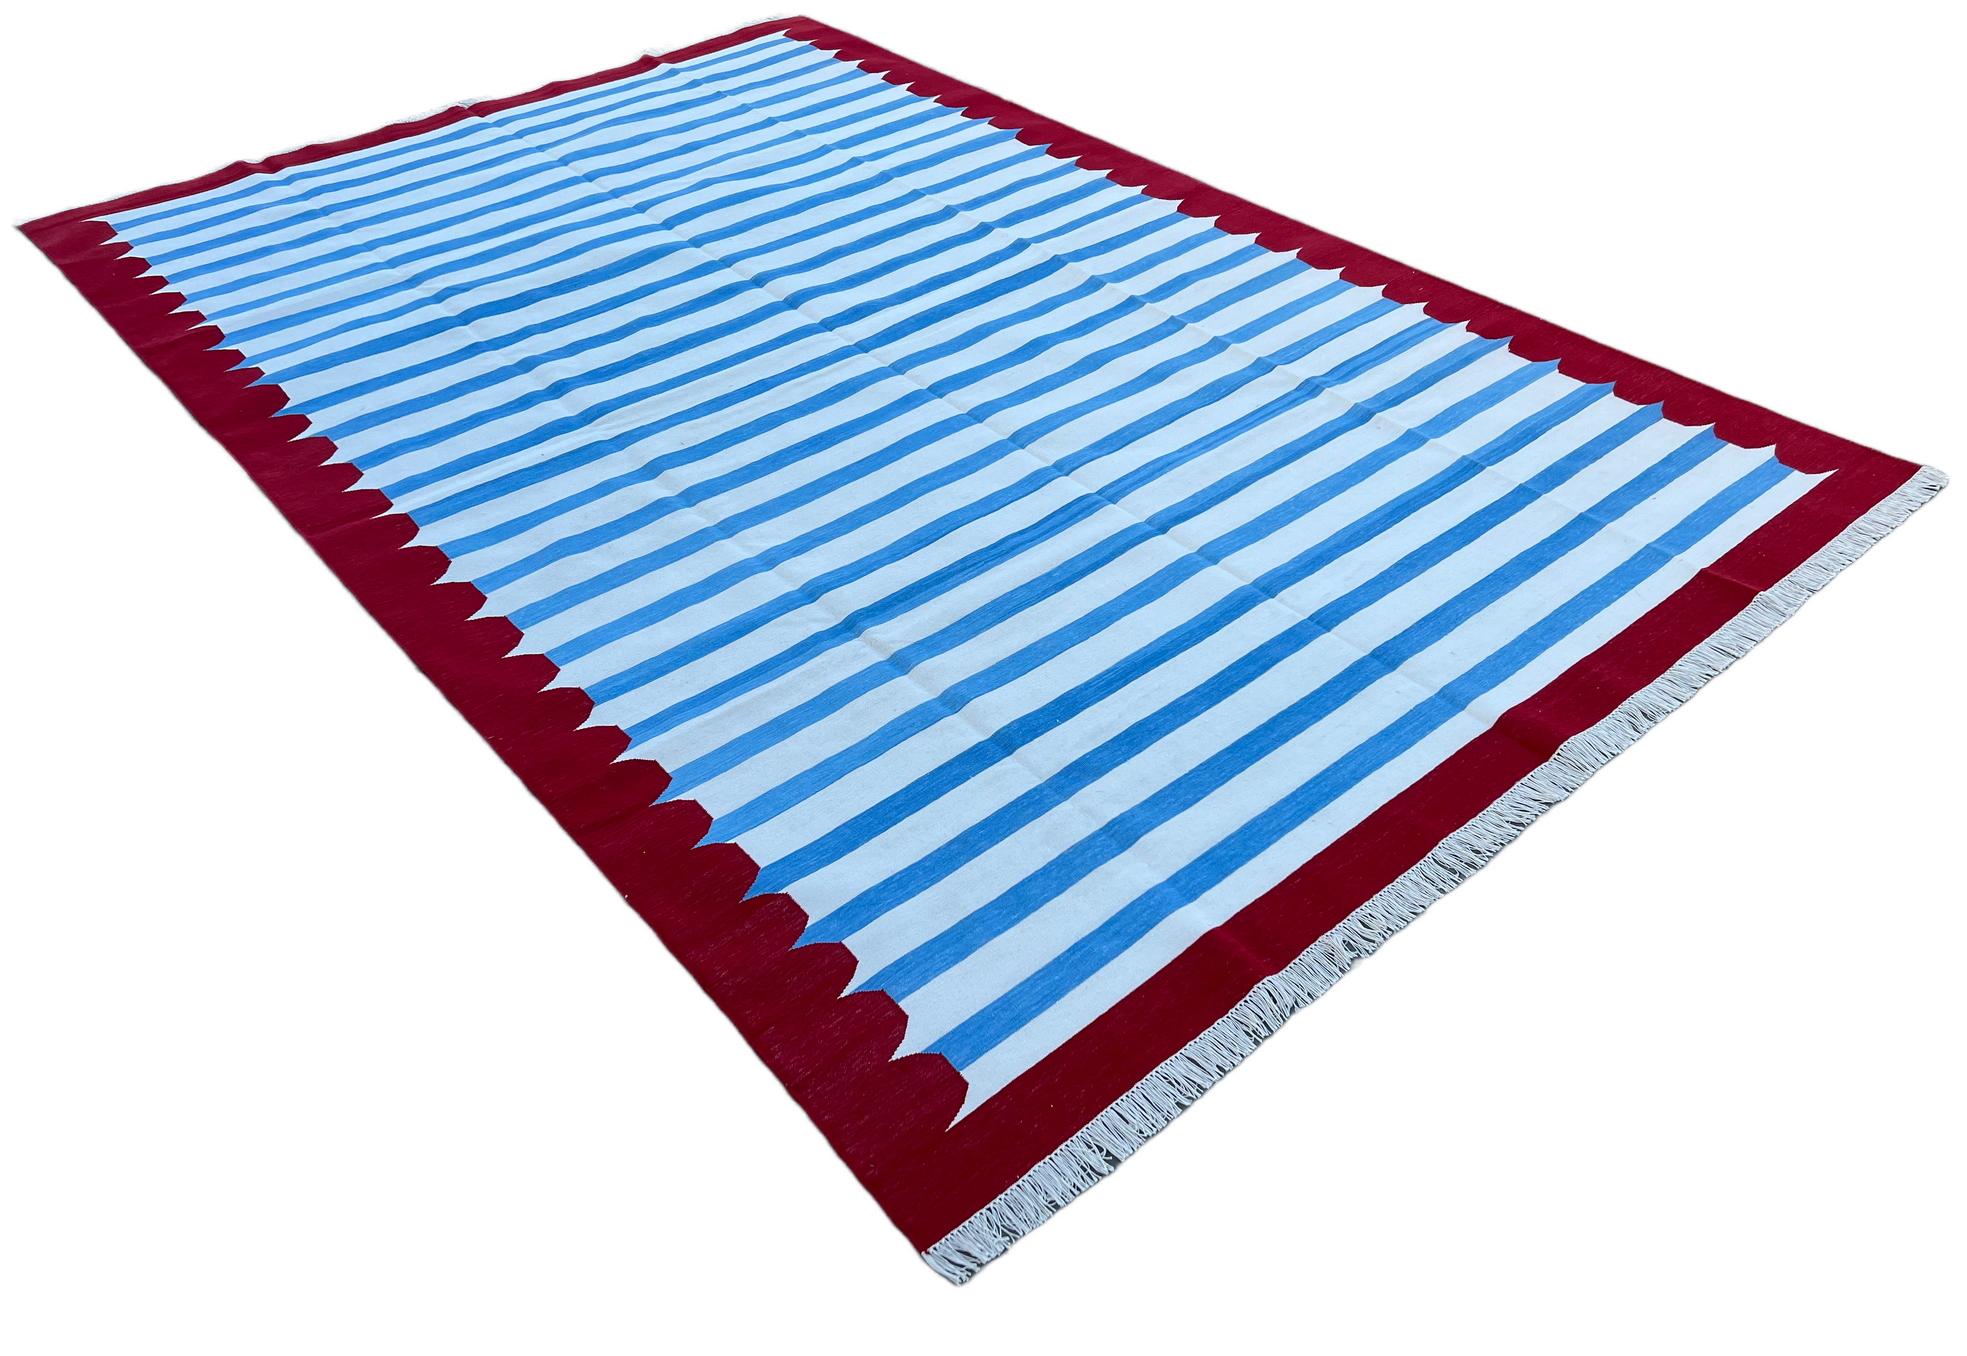 Blau, weiß und rot gestreifter indischer Dhurrie-Teppich aus pflanzlich gefärbter Baumwolle-8'x10' 
Diese speziellen flachgewebten Dhurries werden aus 15-fachem Garn aus 100% Baumwolle handgewebt. Aufgrund der speziellen Fertigungstechniken, die zur